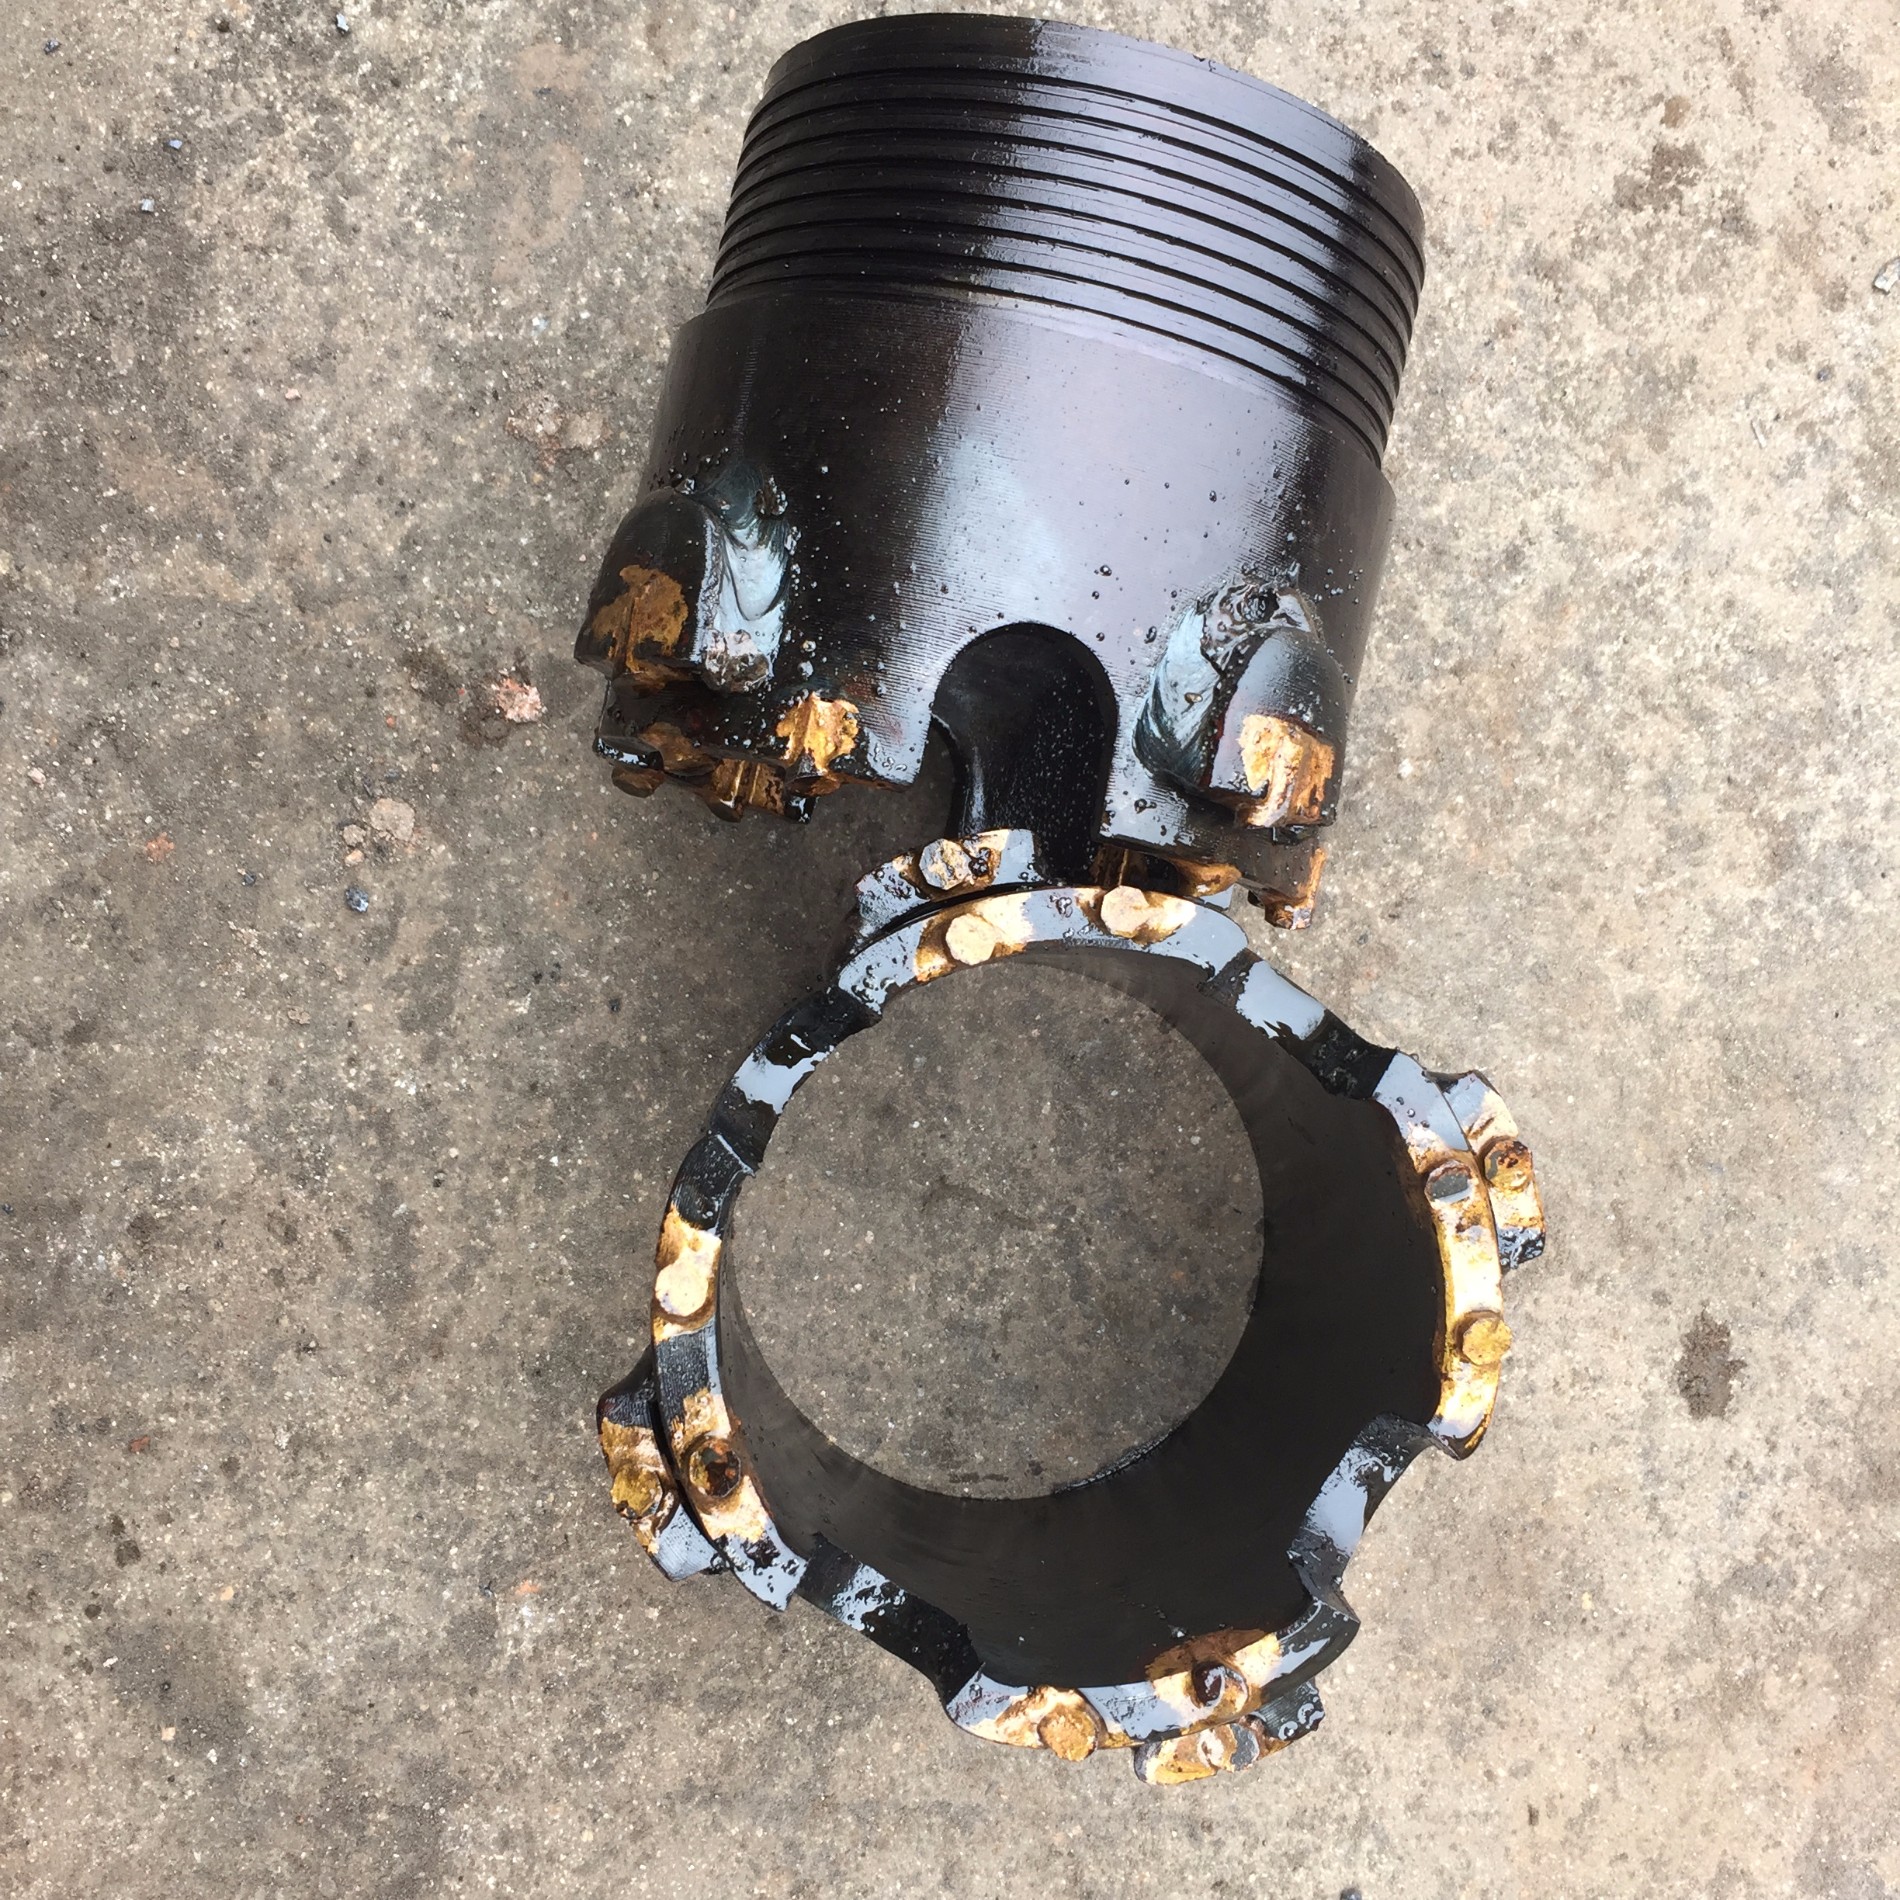 Tungsten Carbide Drill Bit, pdc rock drill bits, three wing pdc drill bits